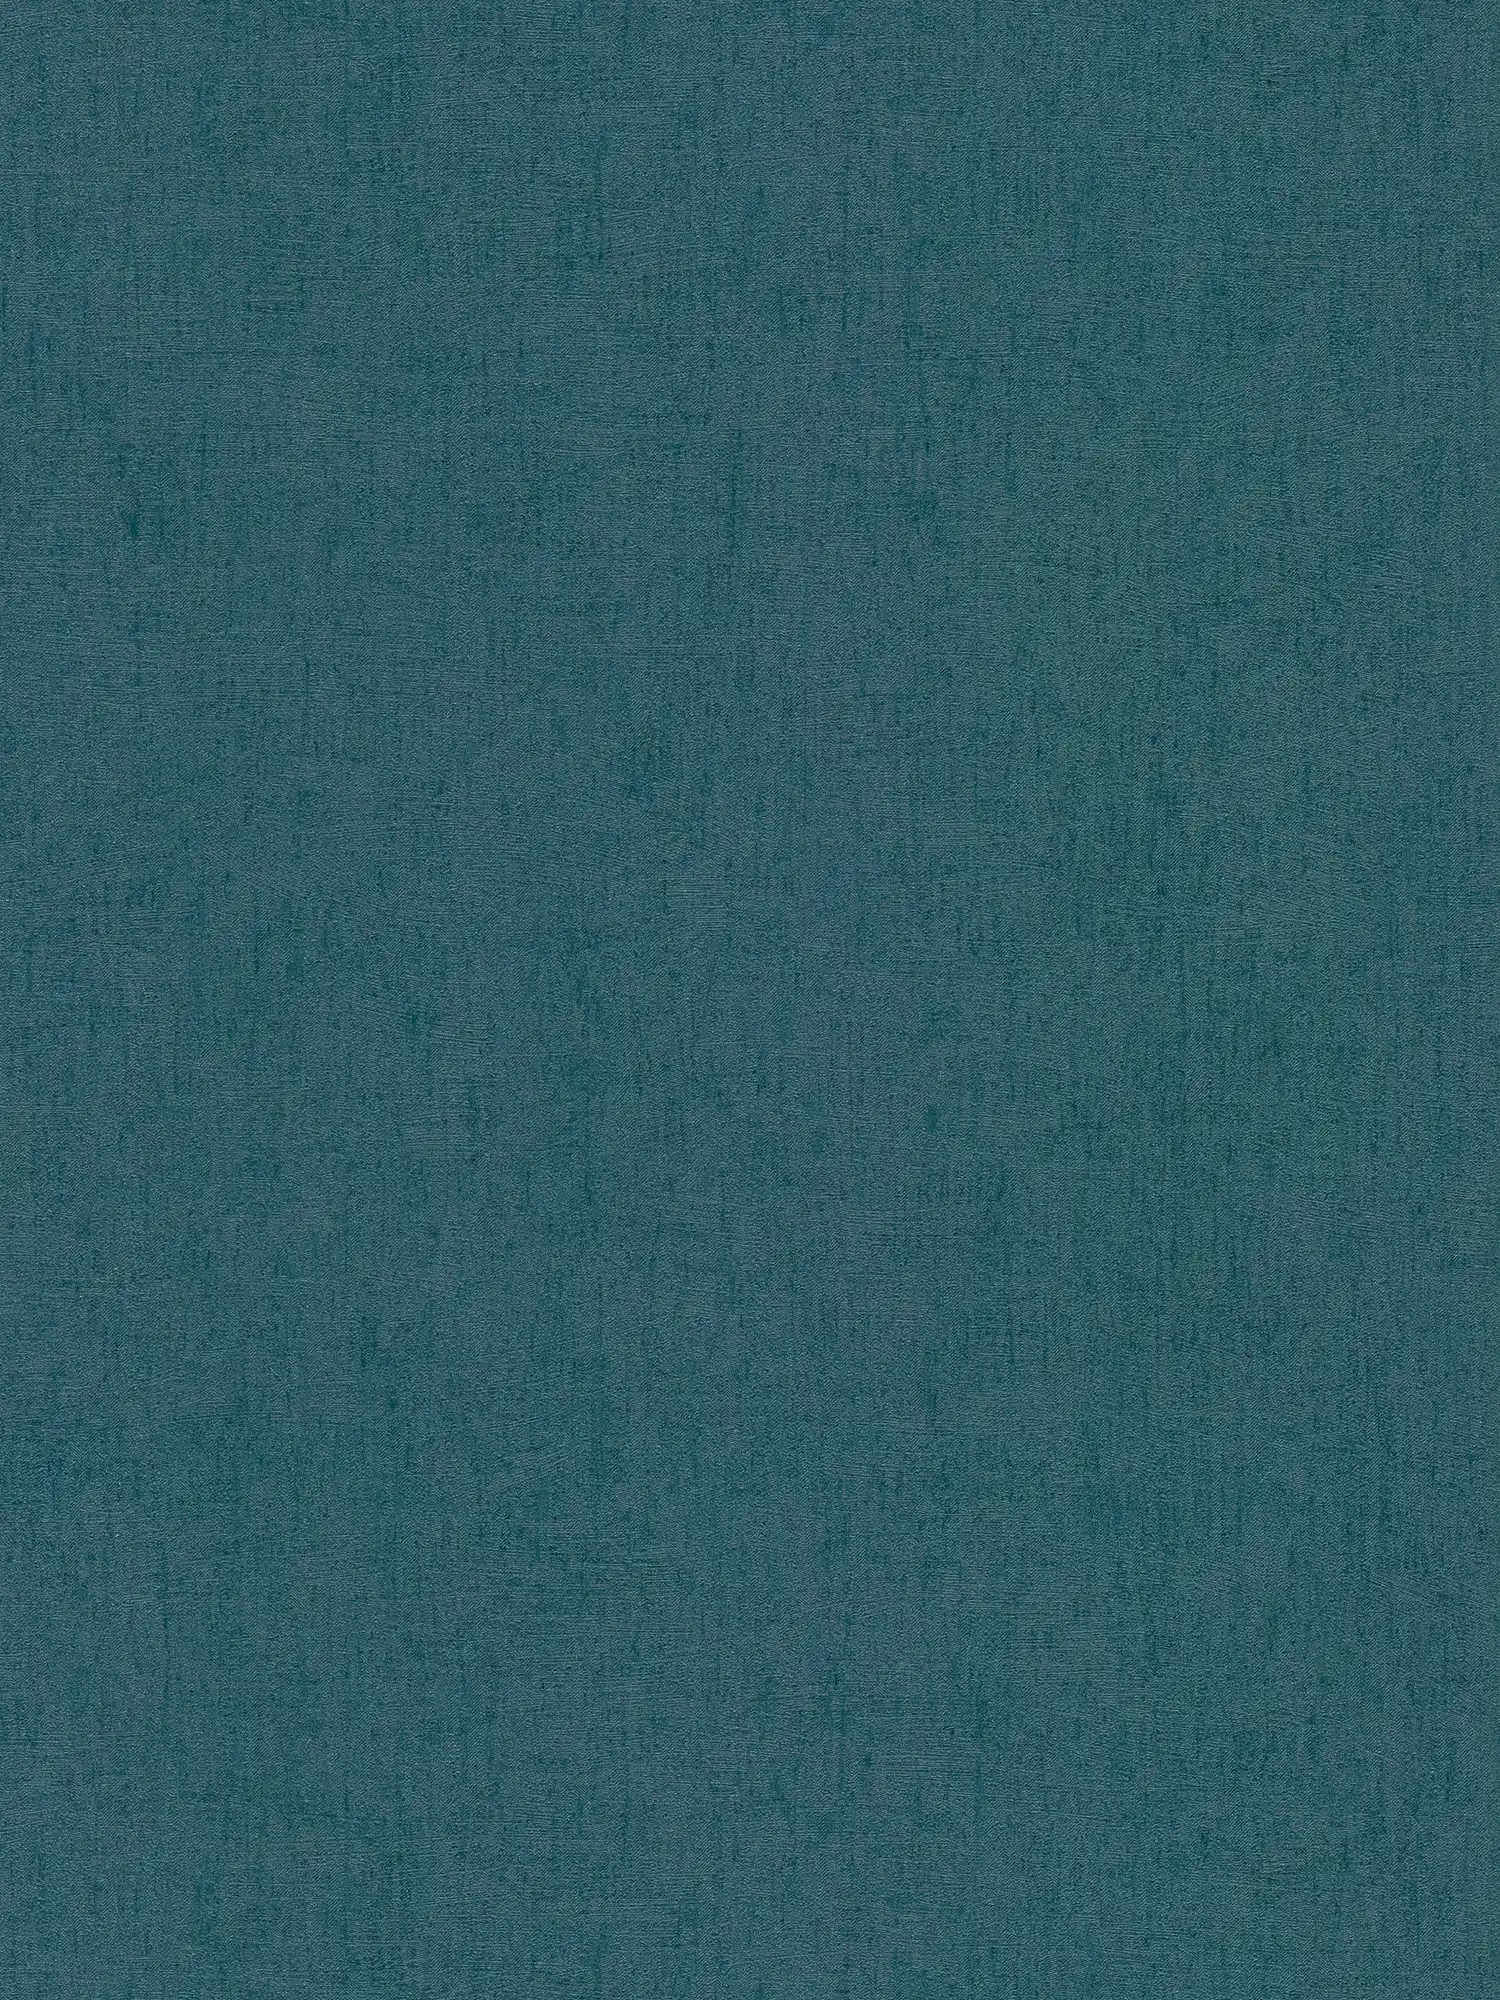 Carta da parati a effetto lucido color petrolio - blu, verde, metallizzata
